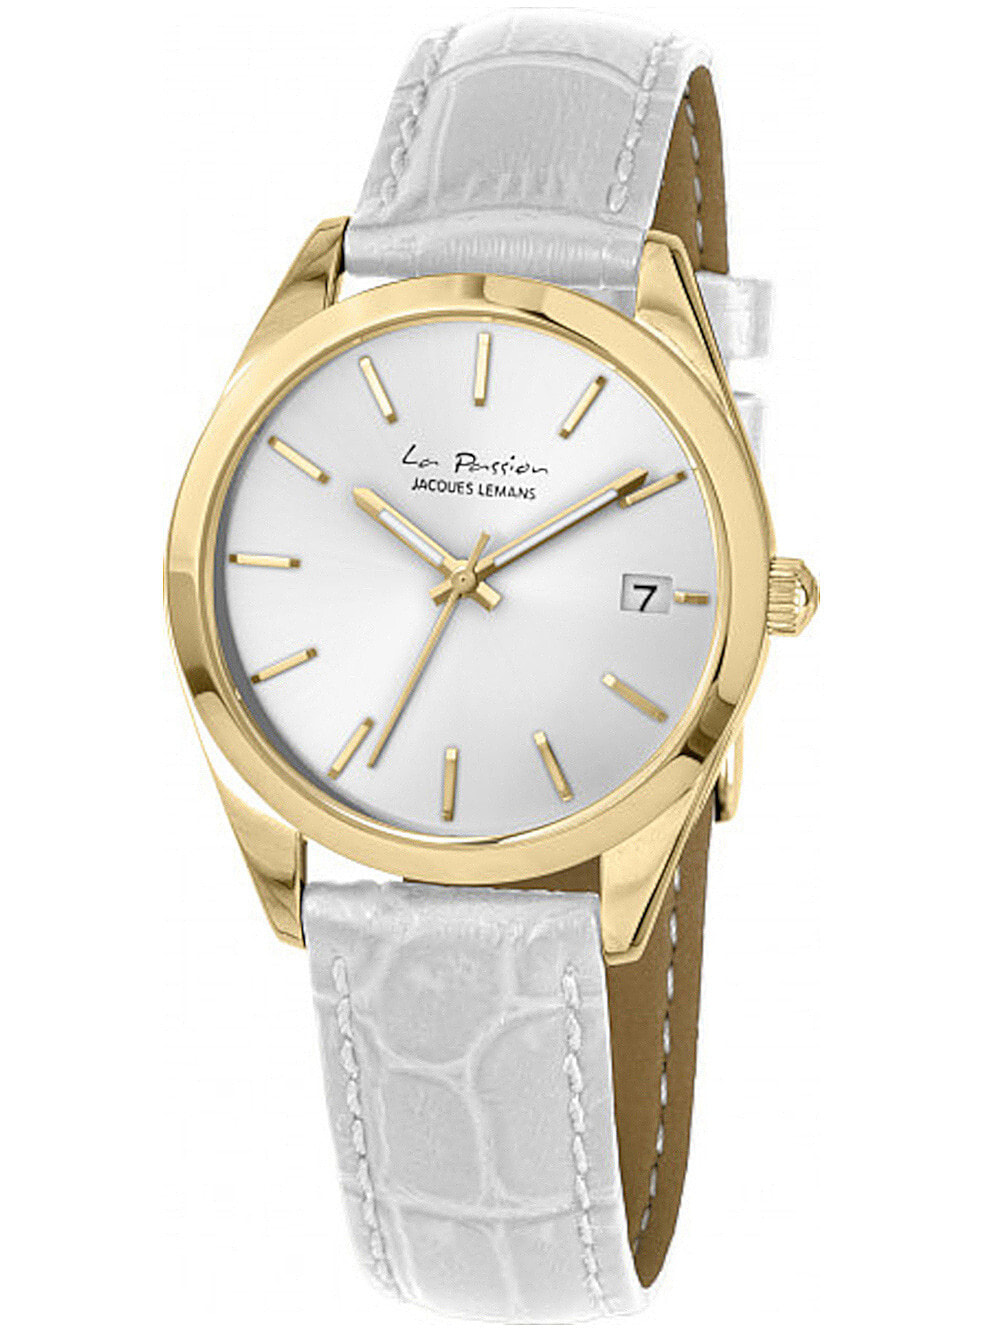 Женские наручные кварцевые часы Jacques Lemans кожаный ремешок, окошко с датой.